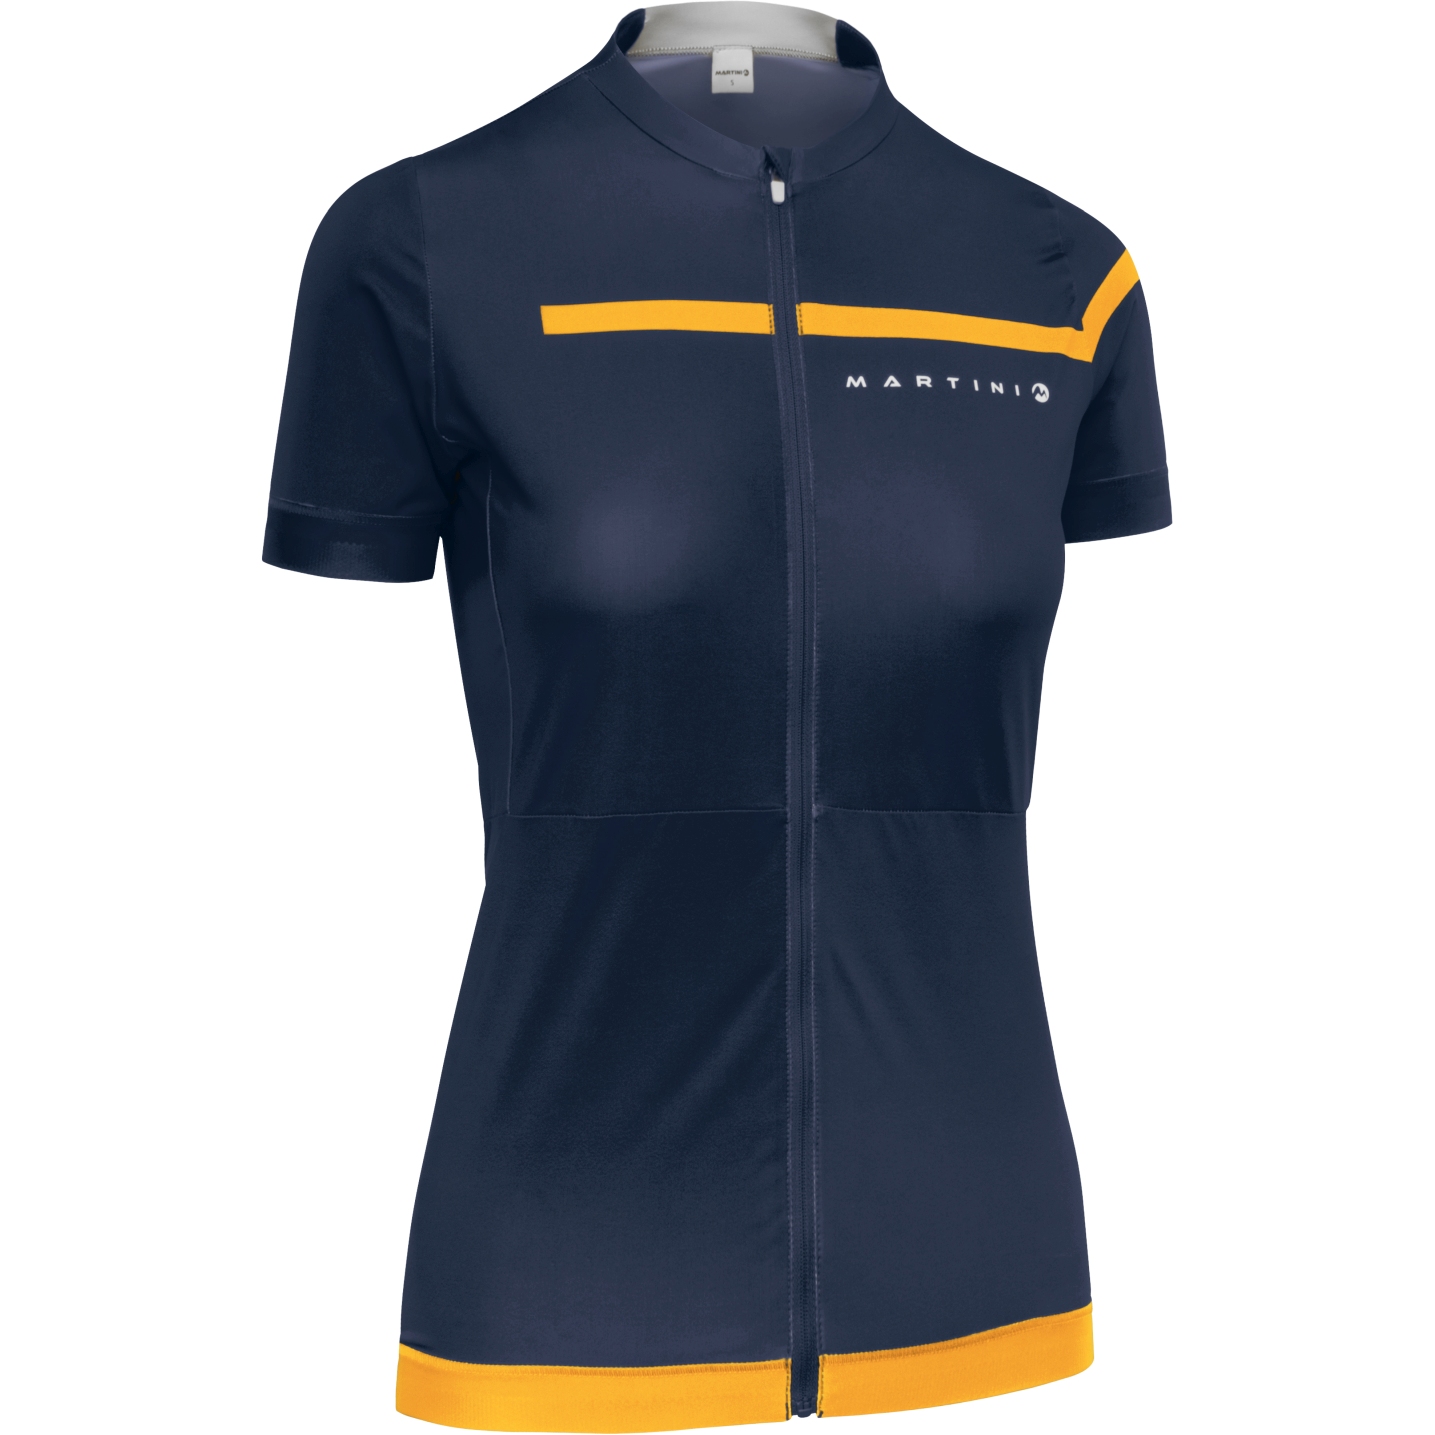 Image of Martini Sportswear Vuelta Women's Jersey - true navy/sole